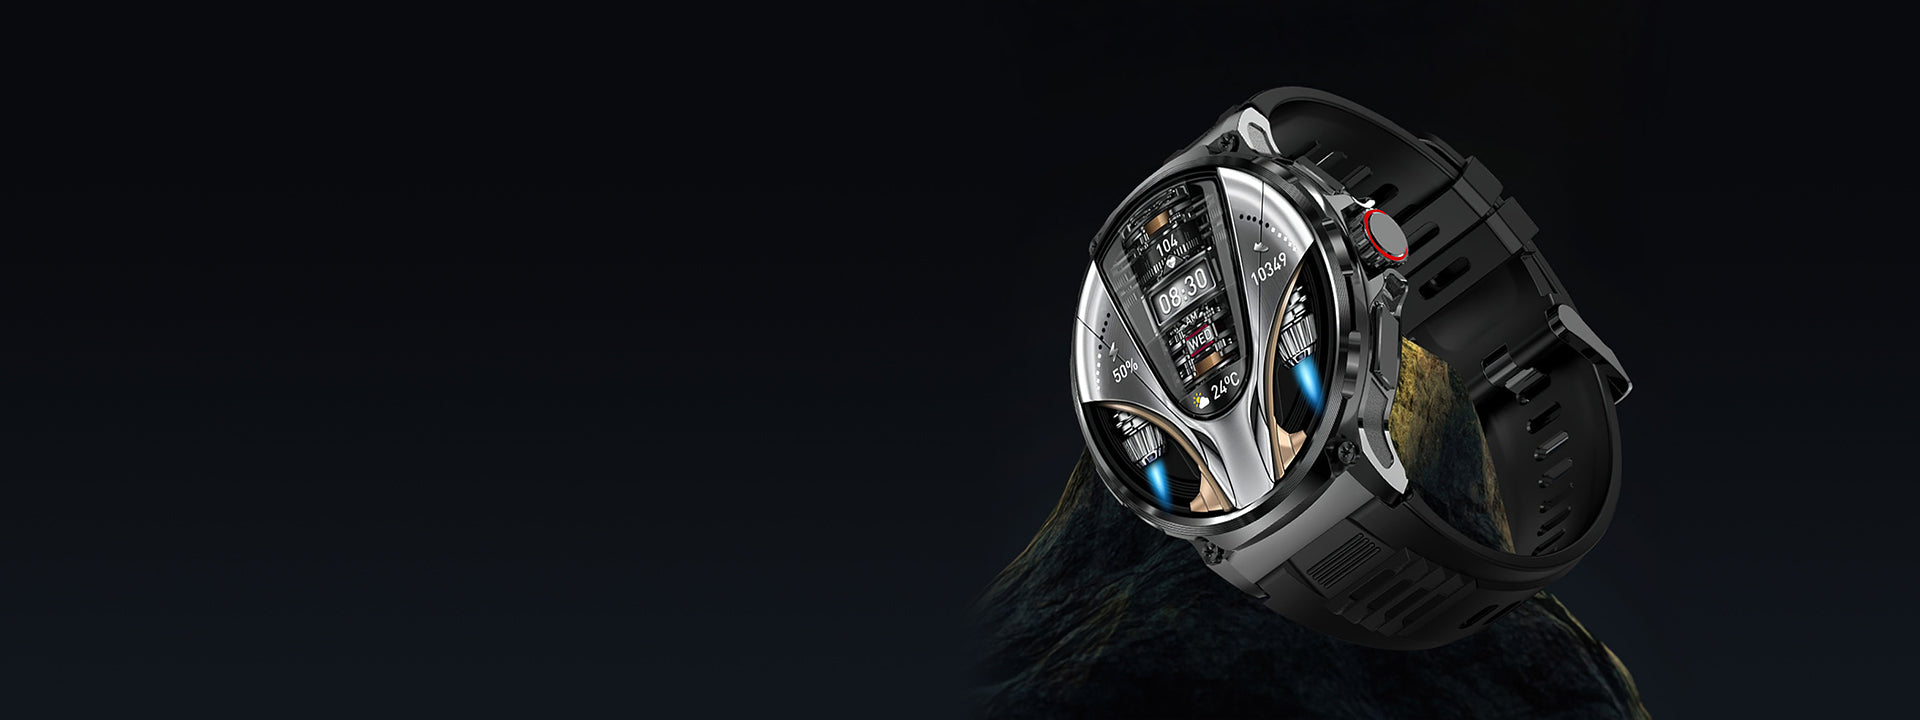 Smart watch COLMI V69 appearance design (1)